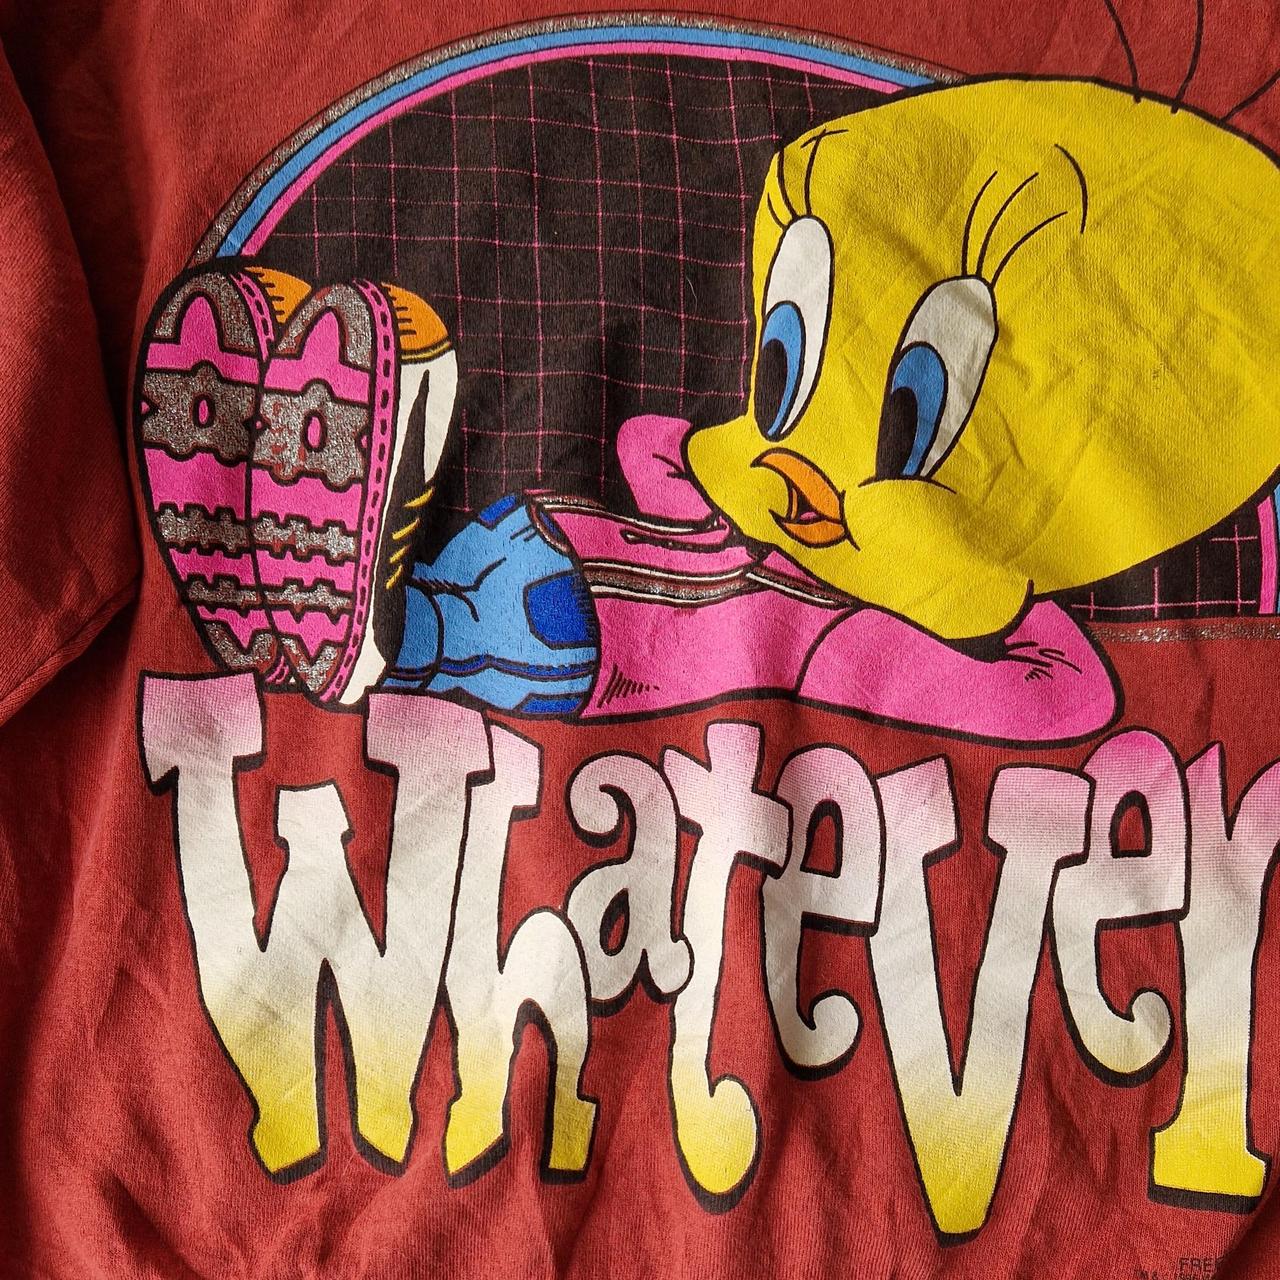 Disney Tweetie bird spellout sweatshirt Large